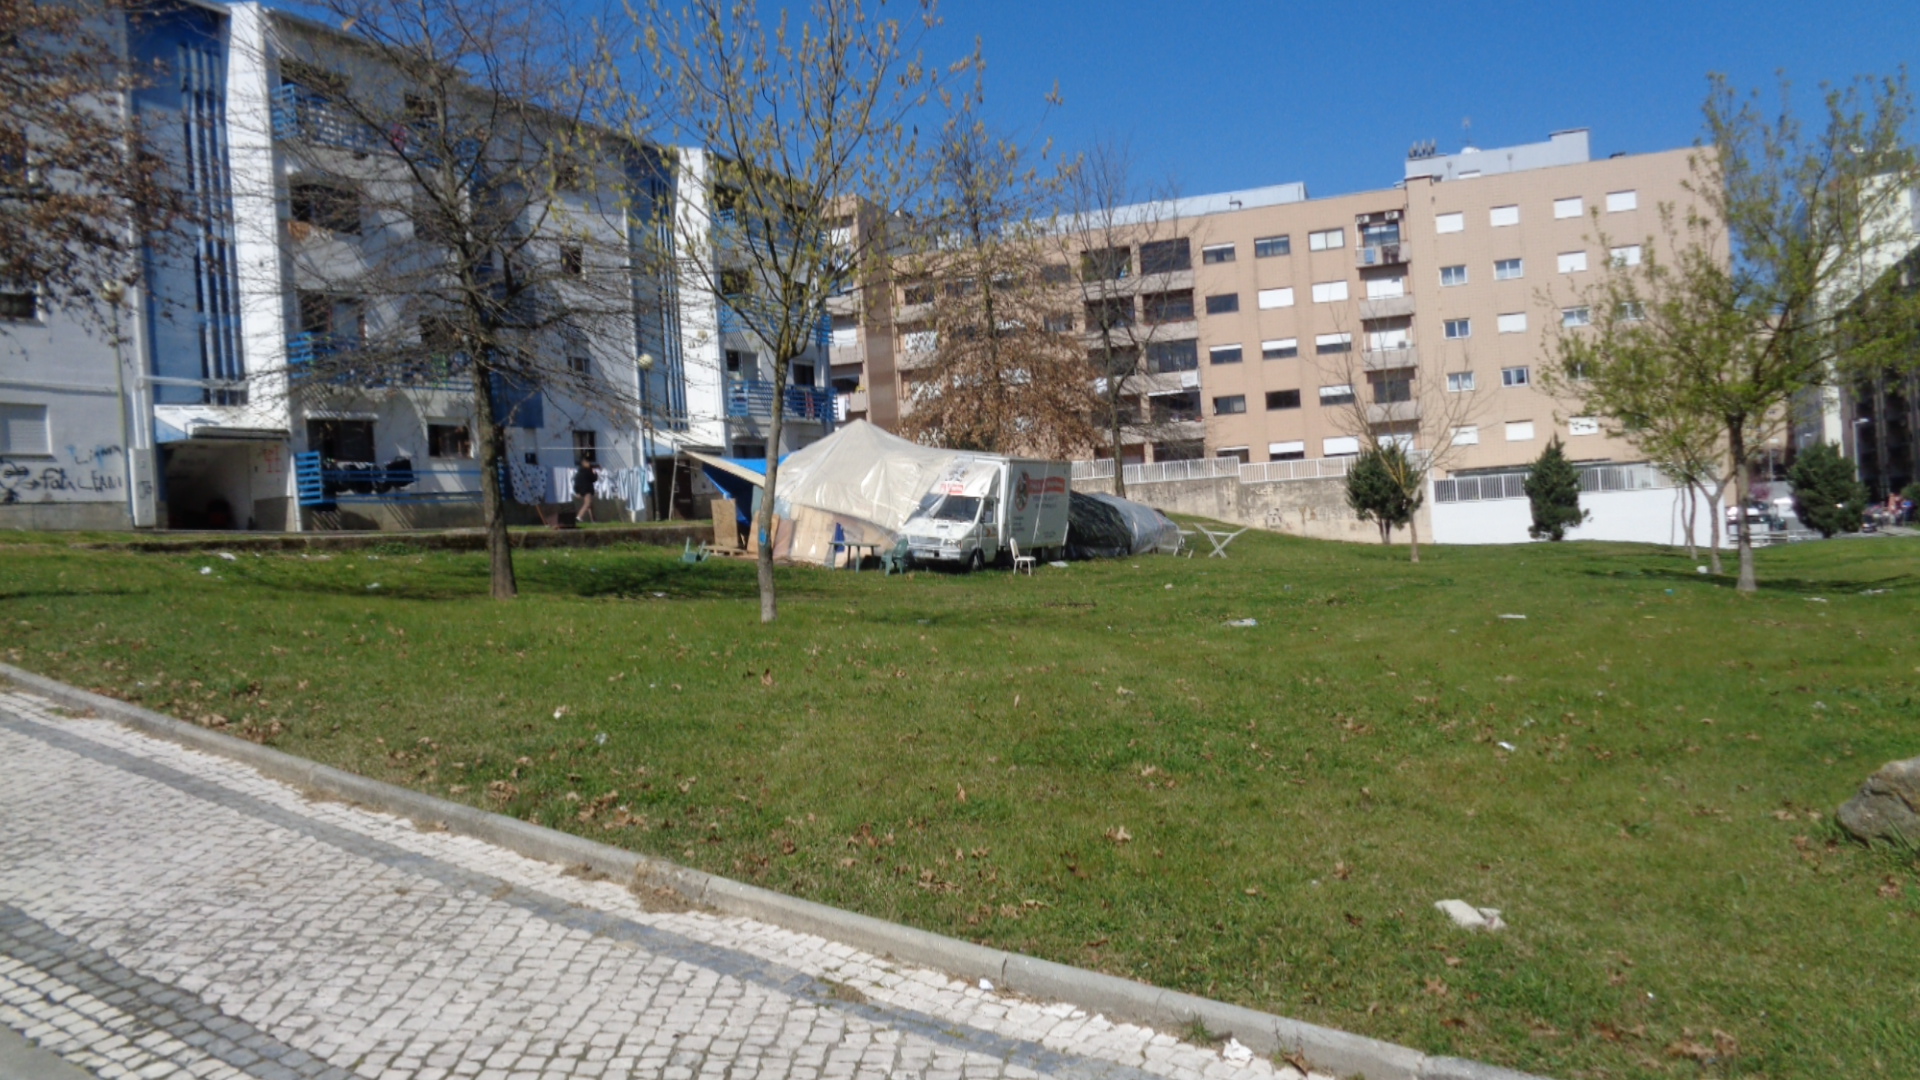 Acampamento em bairro social de Braga indigna vizinhança